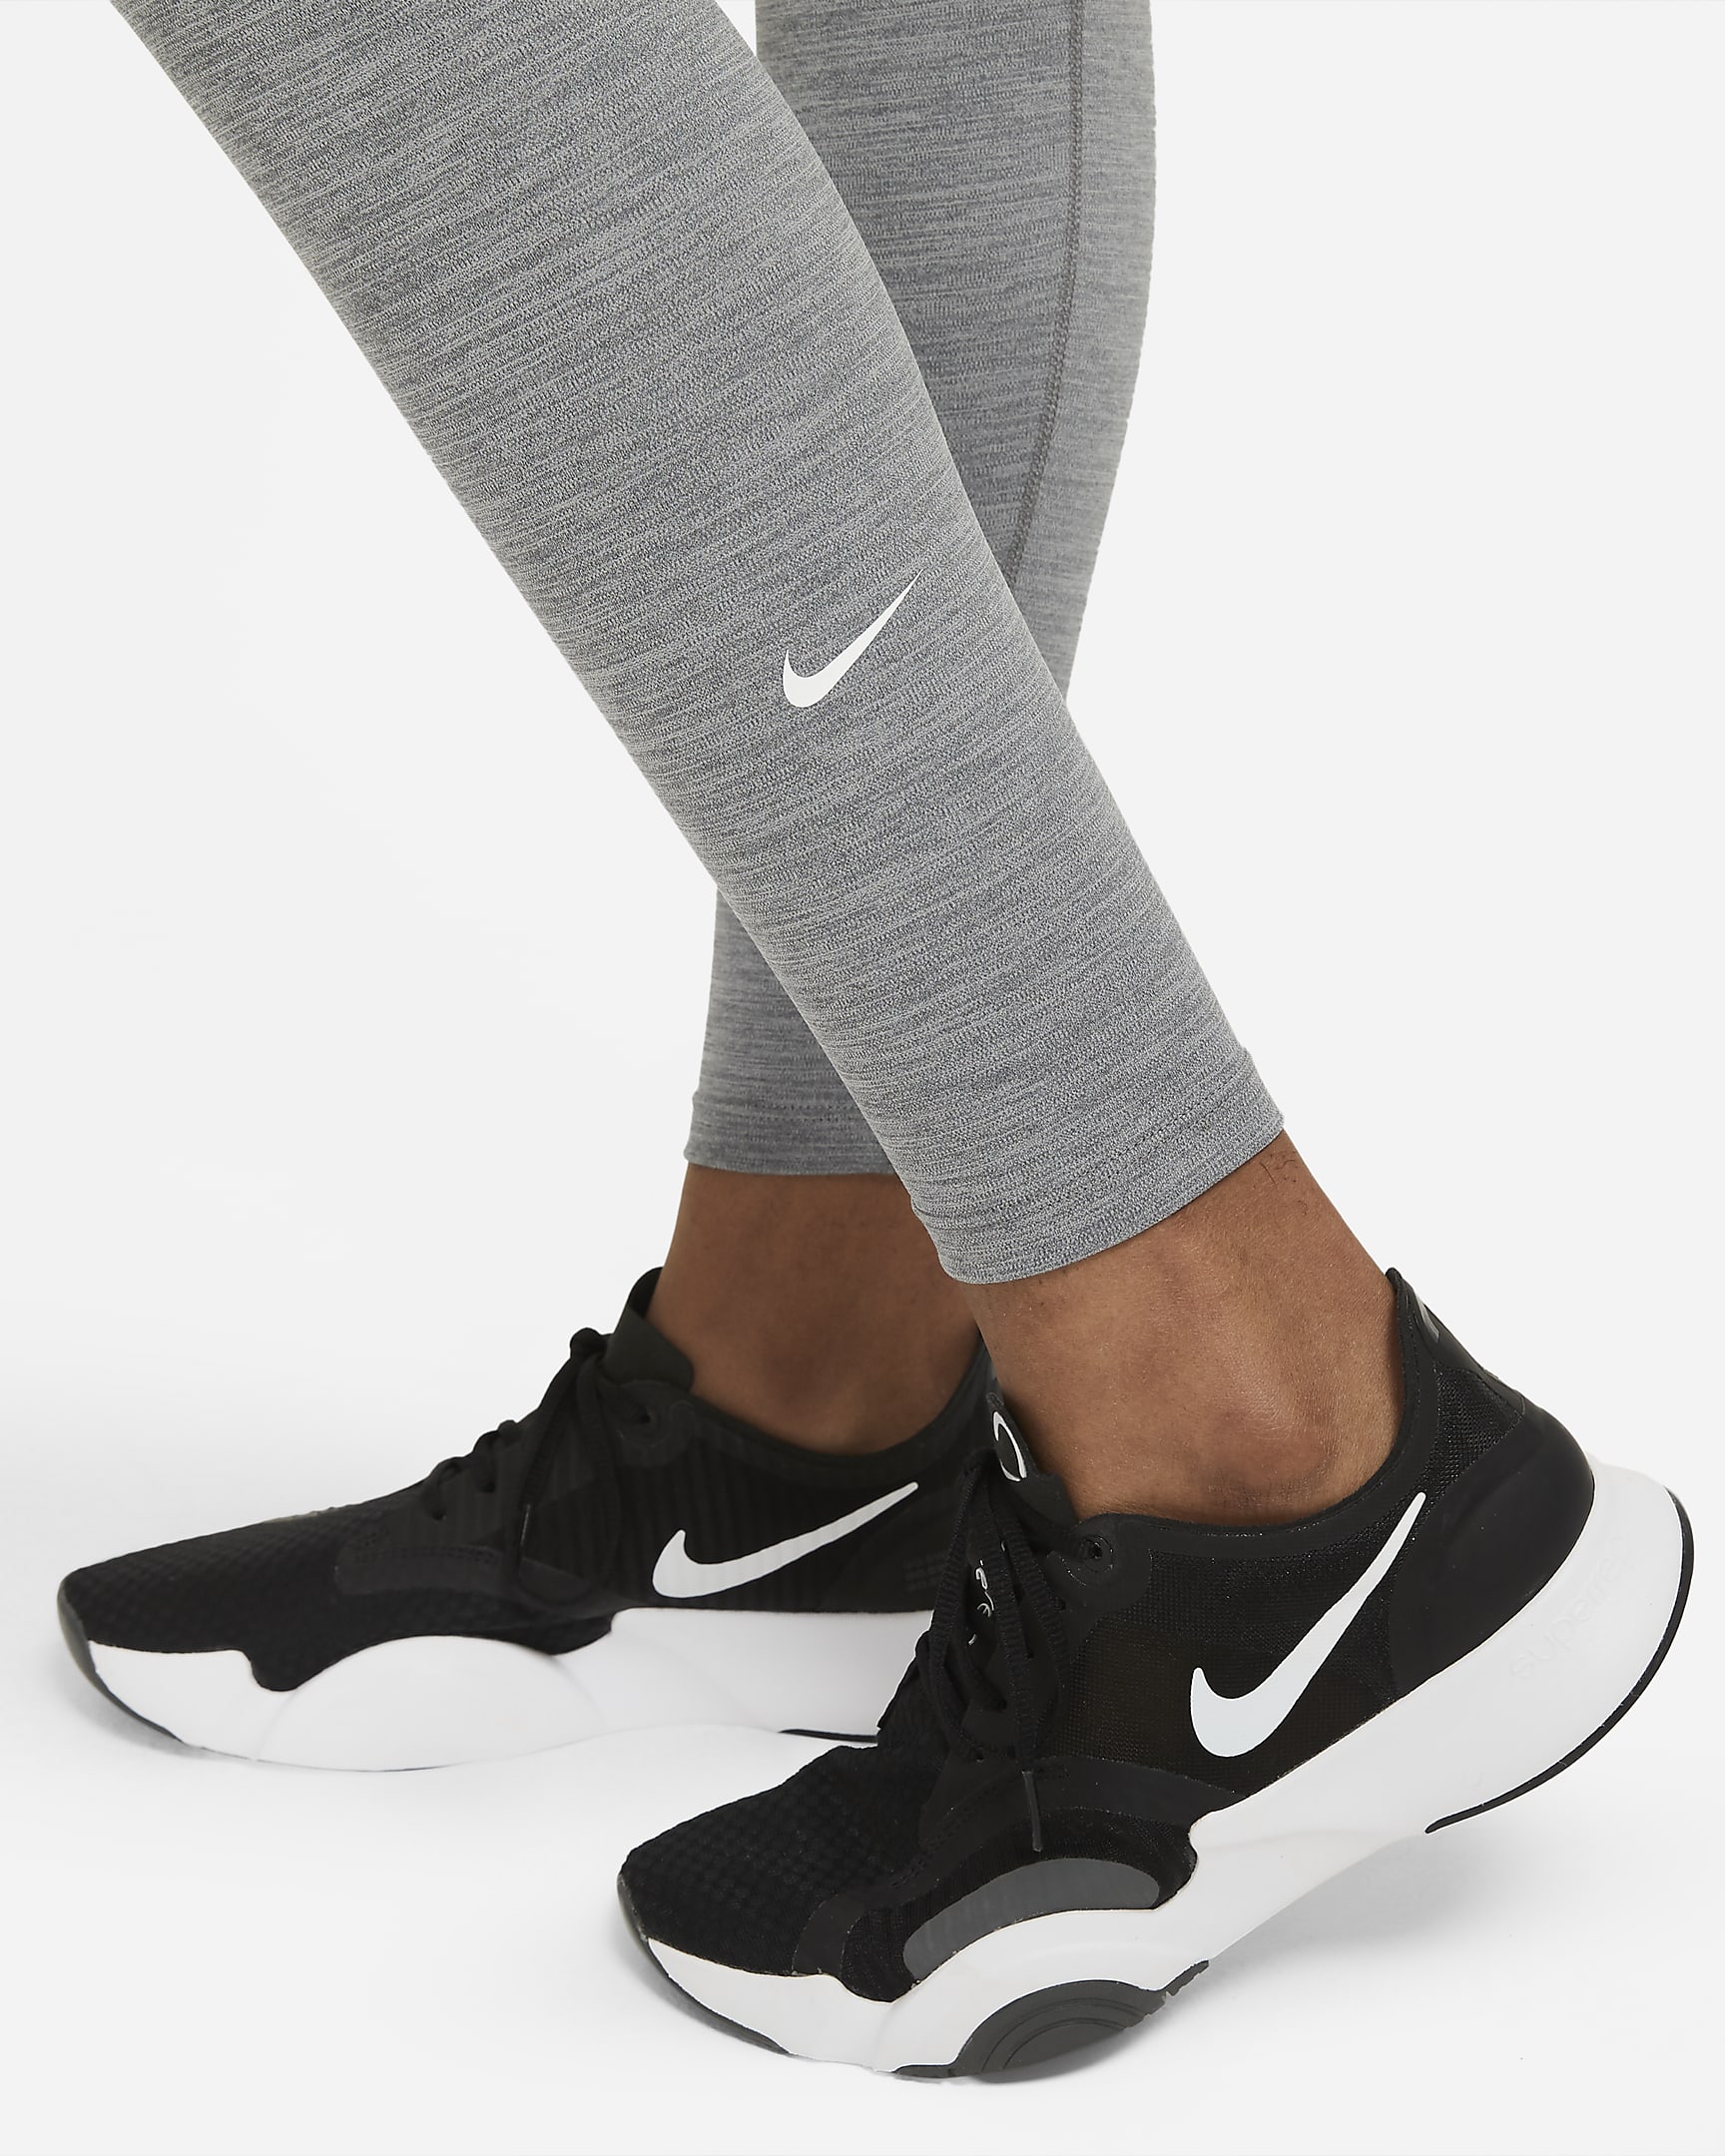 Nike One Women's Mid-Rise Leggings. Nike HU